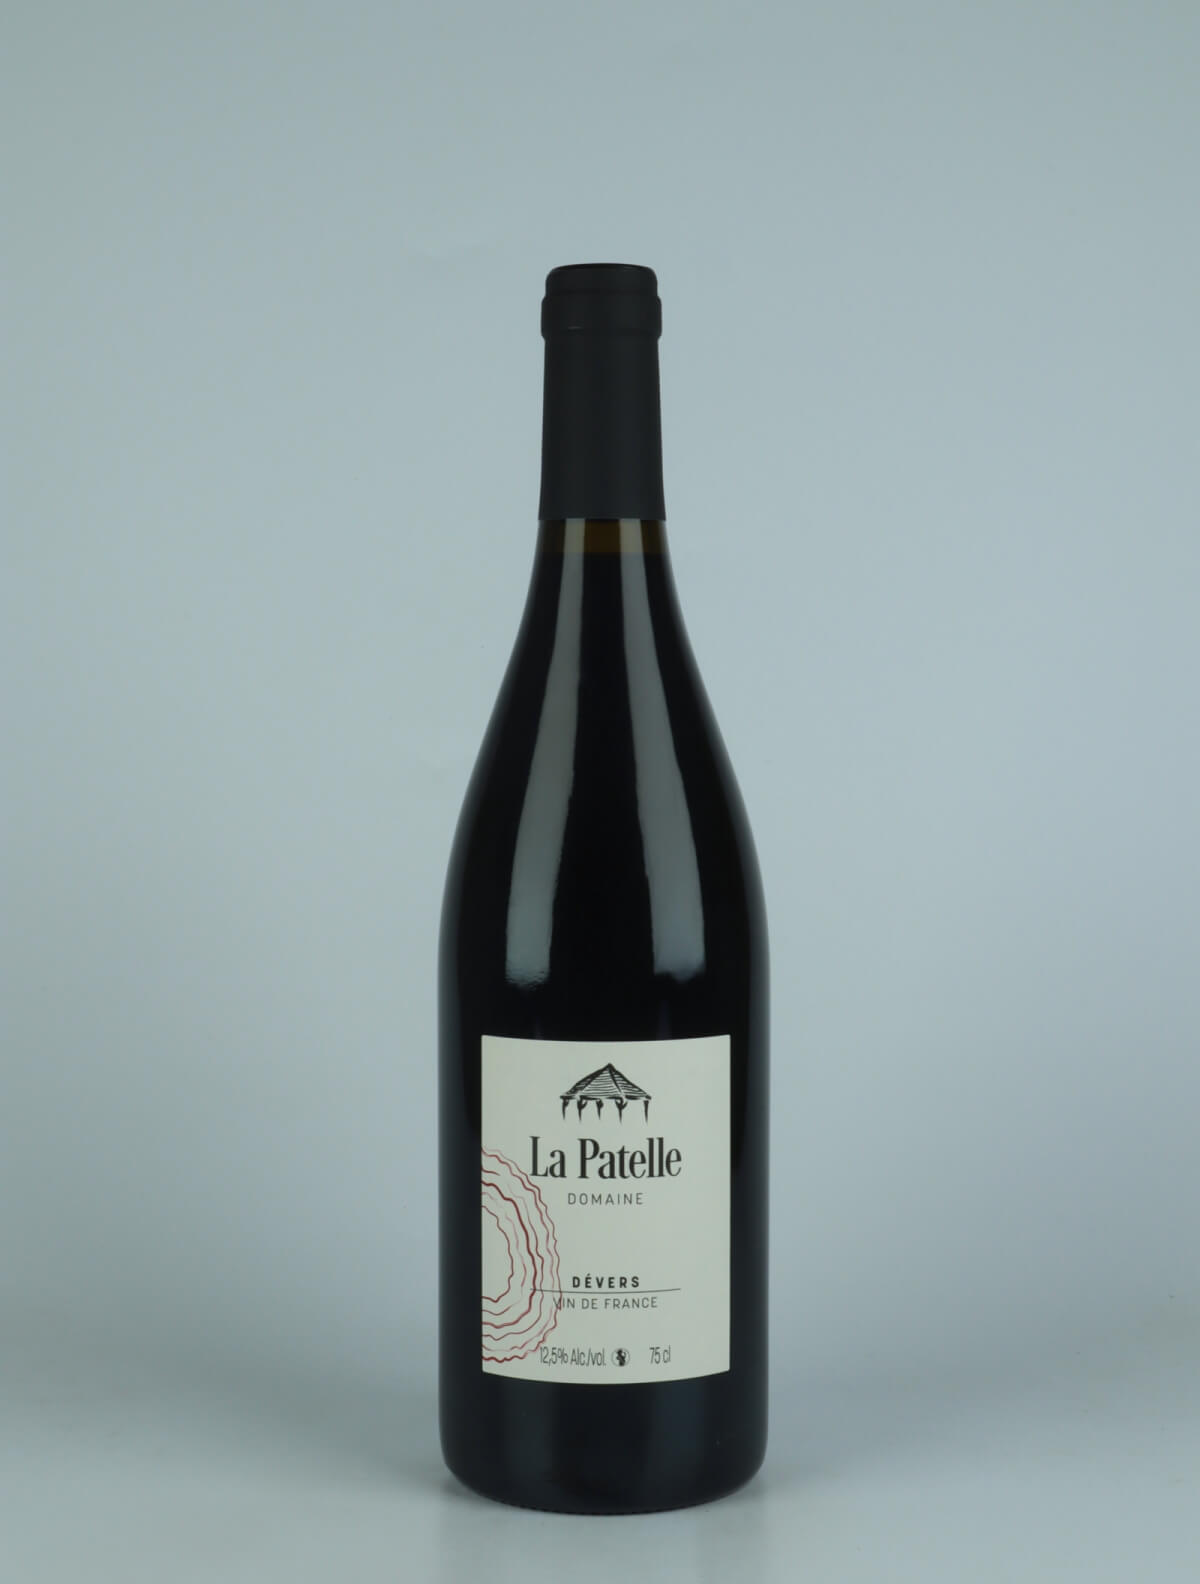 A bottle 2022 Dévers - Pinot Noir Red wine from Domaine de La Patelle, Jura in France